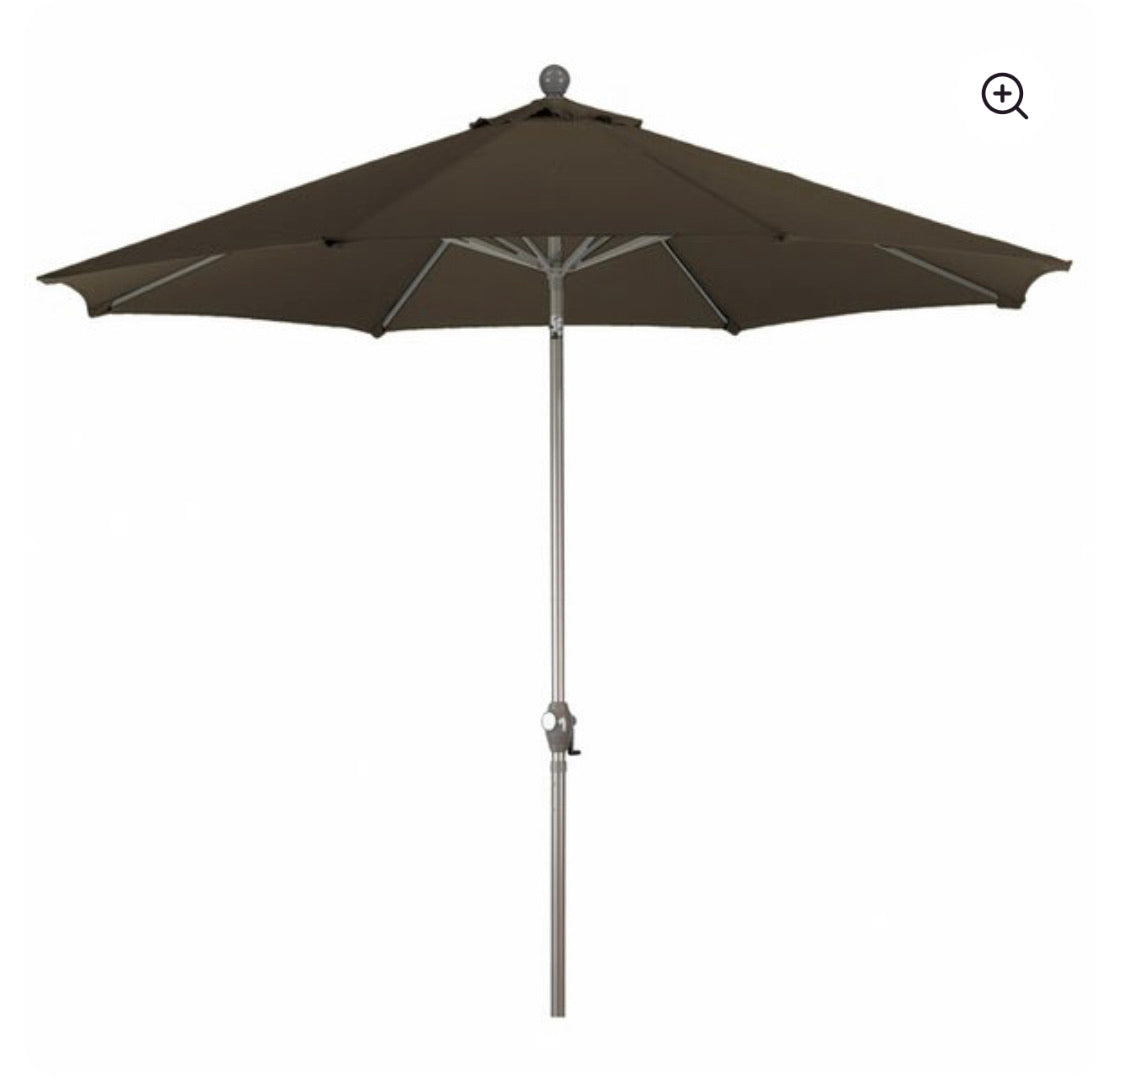 Phat Tommy Outdoor Oasis 9’ Market Umbrella-Teak Brown #4653